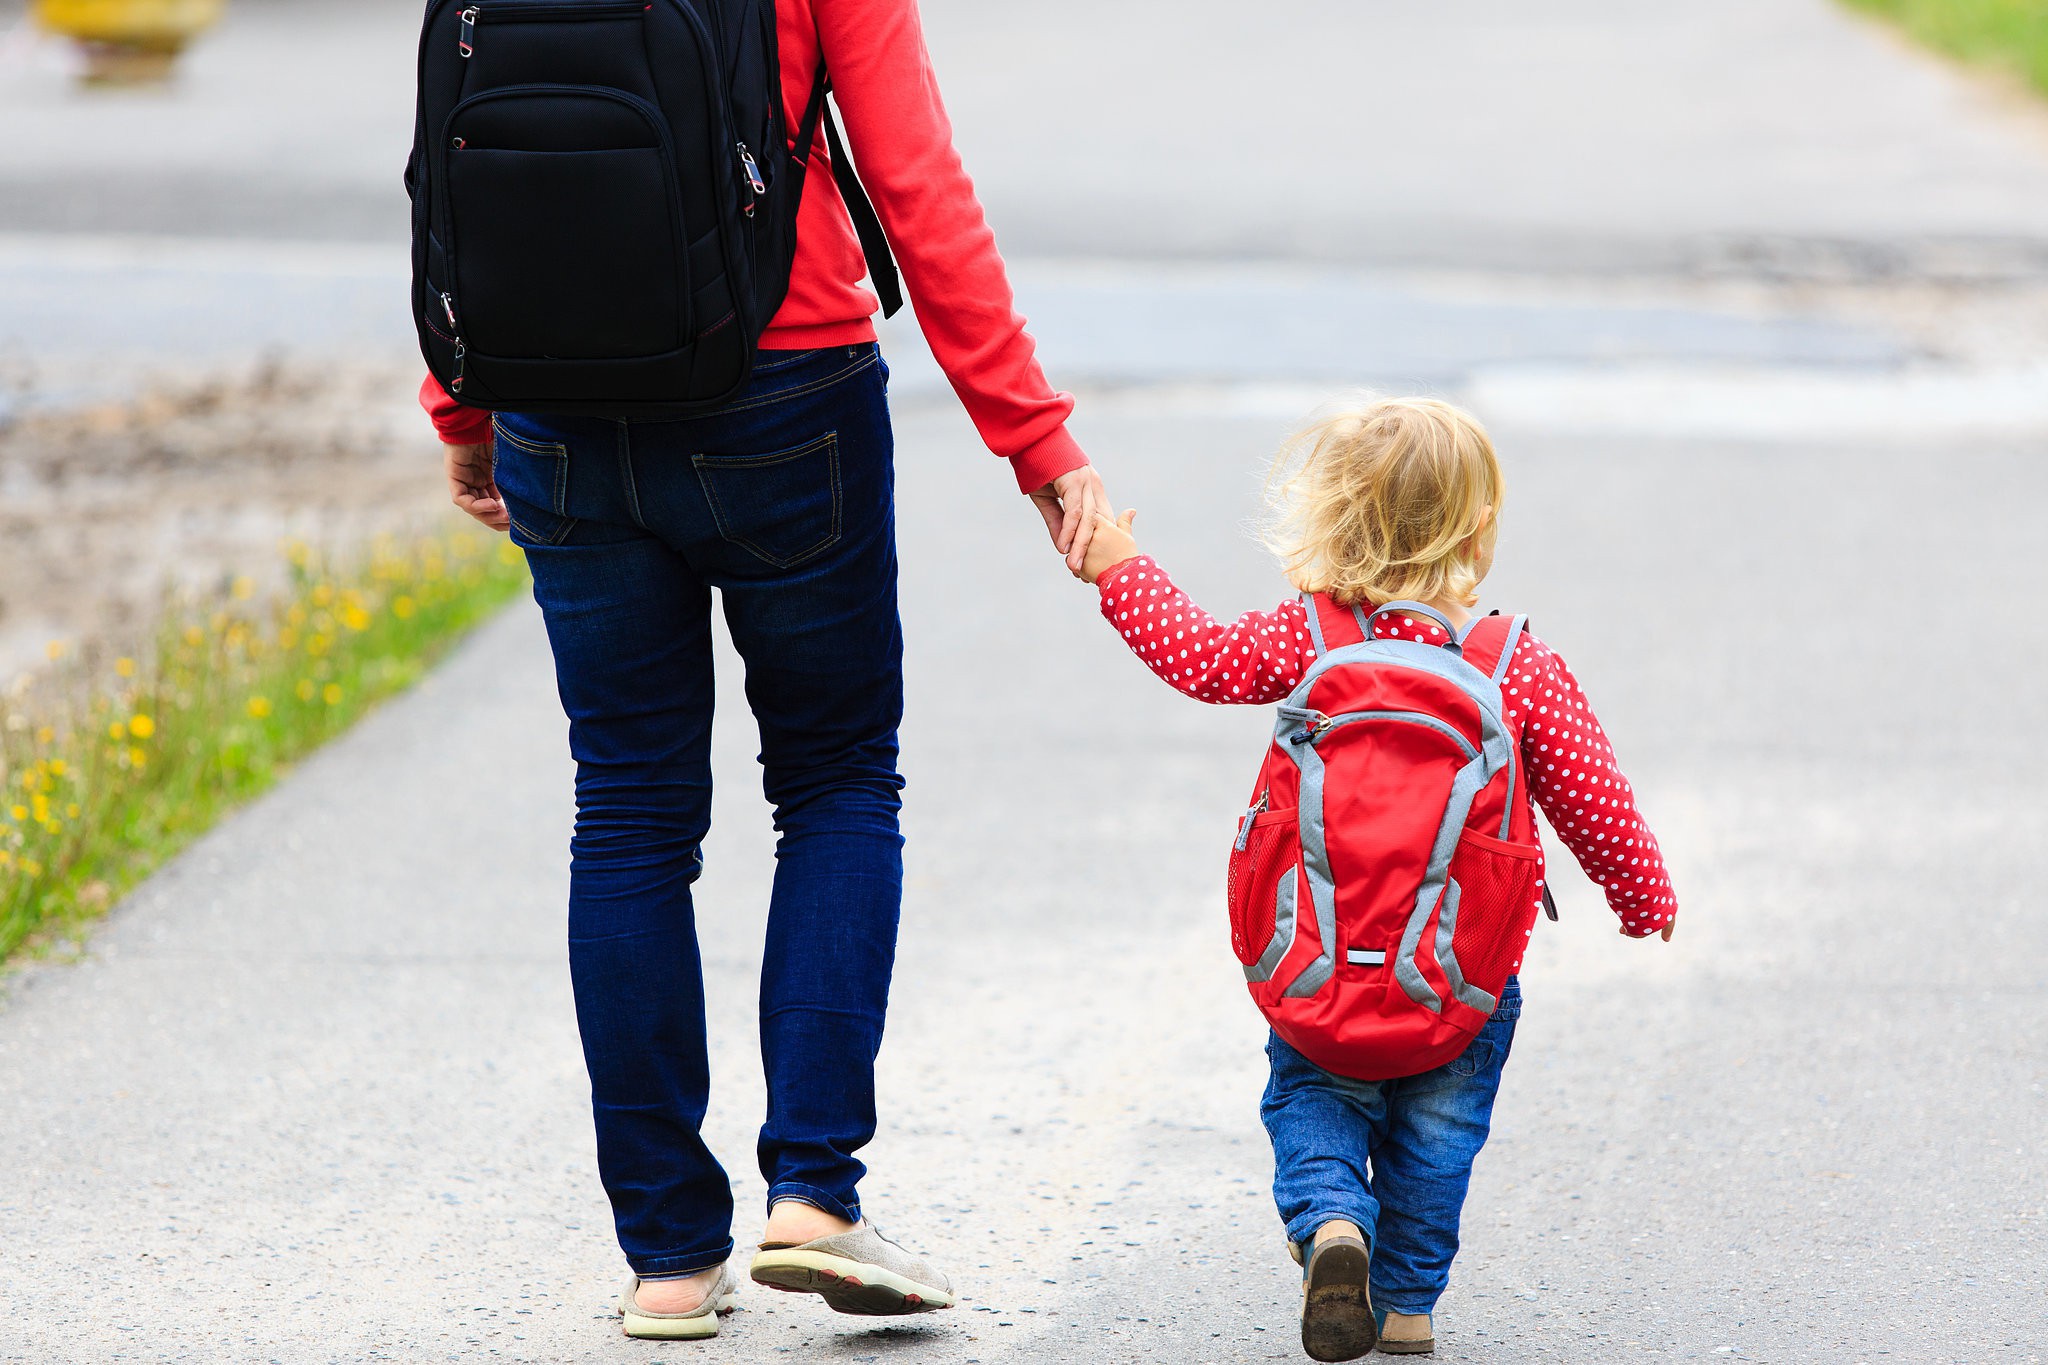 30 въпроса, които да зададете на детето ви вместо „Как мина денят ти?“